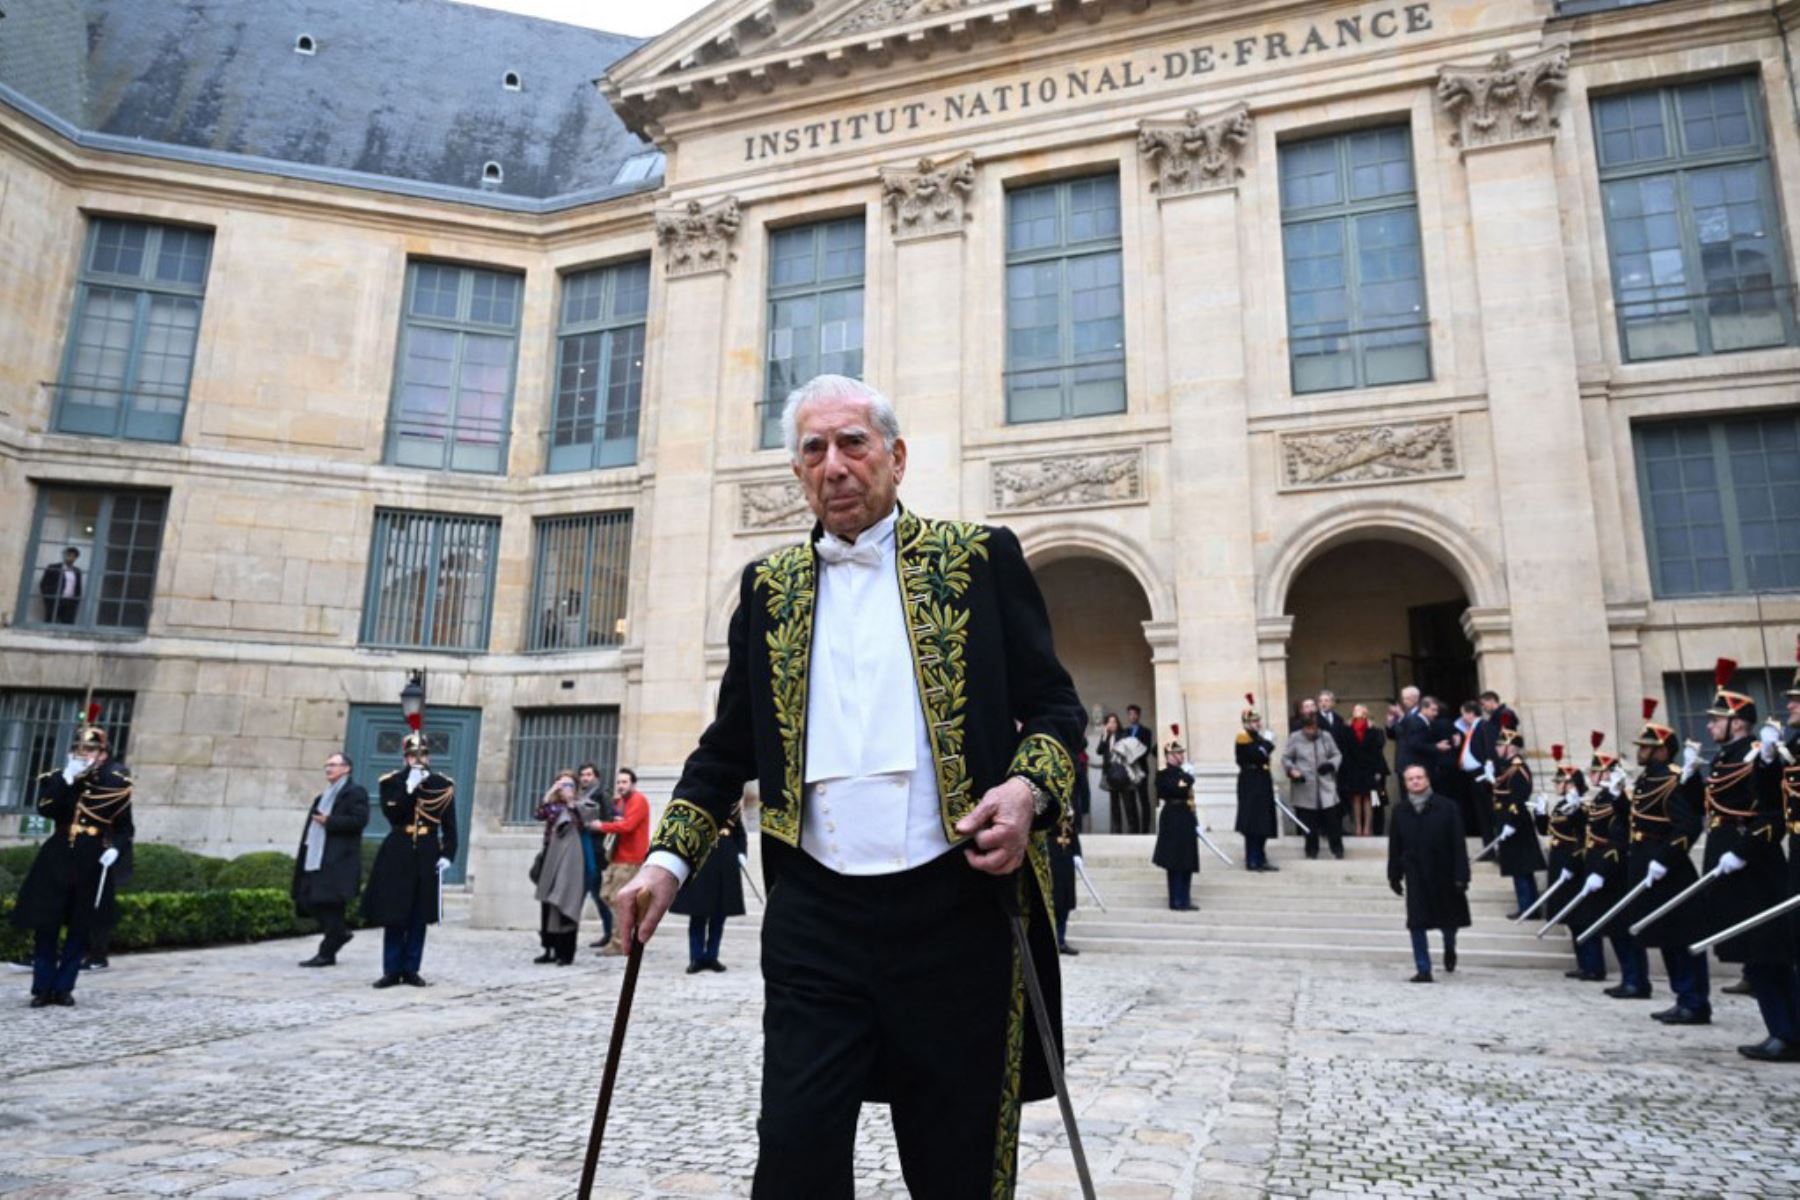 El escritor peruano y ganador del premio Nobel de literatura Mario Vargas Llosa se va después de la ceremonia de incorporación a la Académie Francaise (Academia Francesa), en París. Foto: AFP